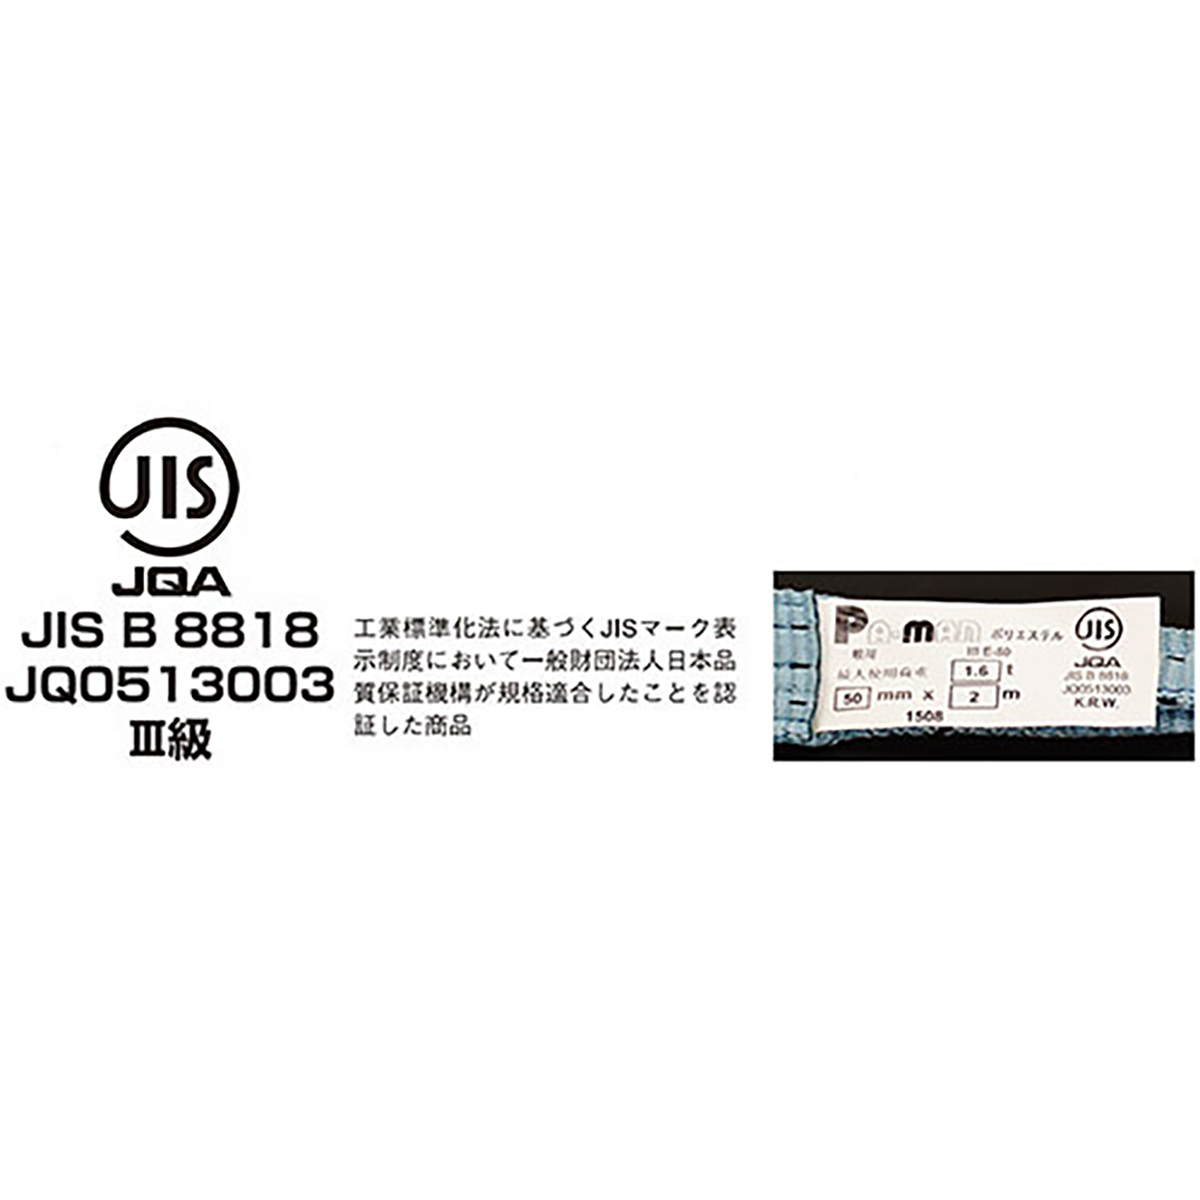 ポリベルトスリング JIS III級 ソフト面付 巾75mm 4m 1本